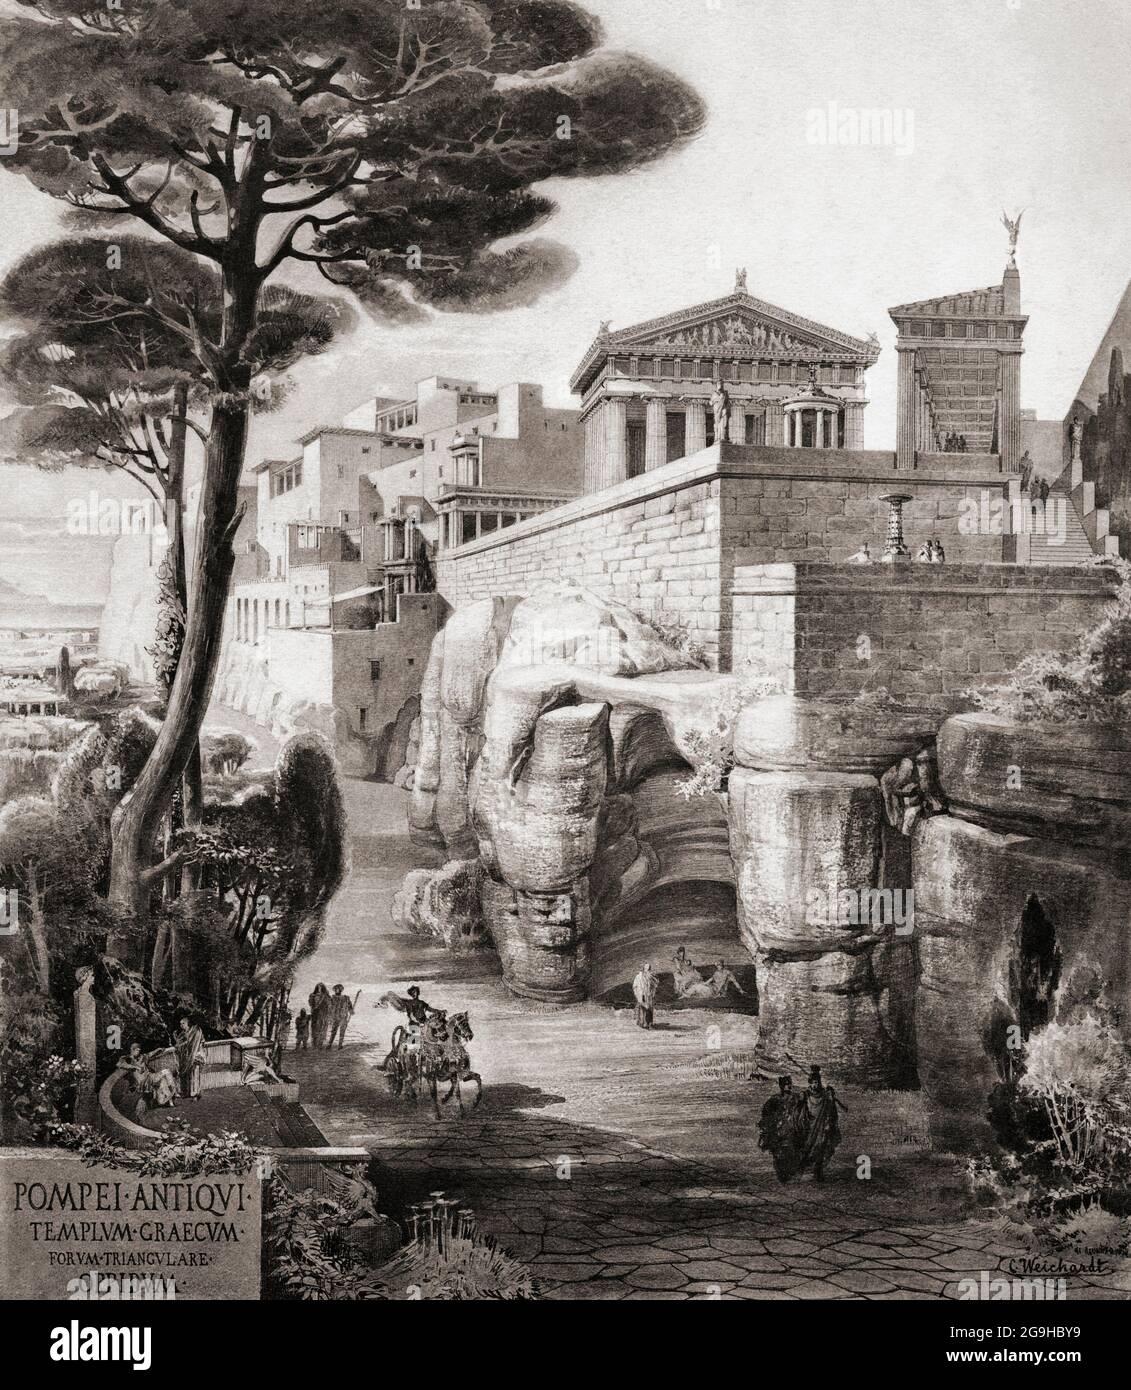 Pompeji, Italien. Eine Rekonstruktion aus dem 19. Jahrhundert, wie die Südseite von Pompeji mit dem griechischen Tempel auf dem dreieckigen Forum ausgesehen haben könnte. Nach einem Werk des Künstlers Carl Weichardt aus dem 19. Jahrhundert. Stockfoto